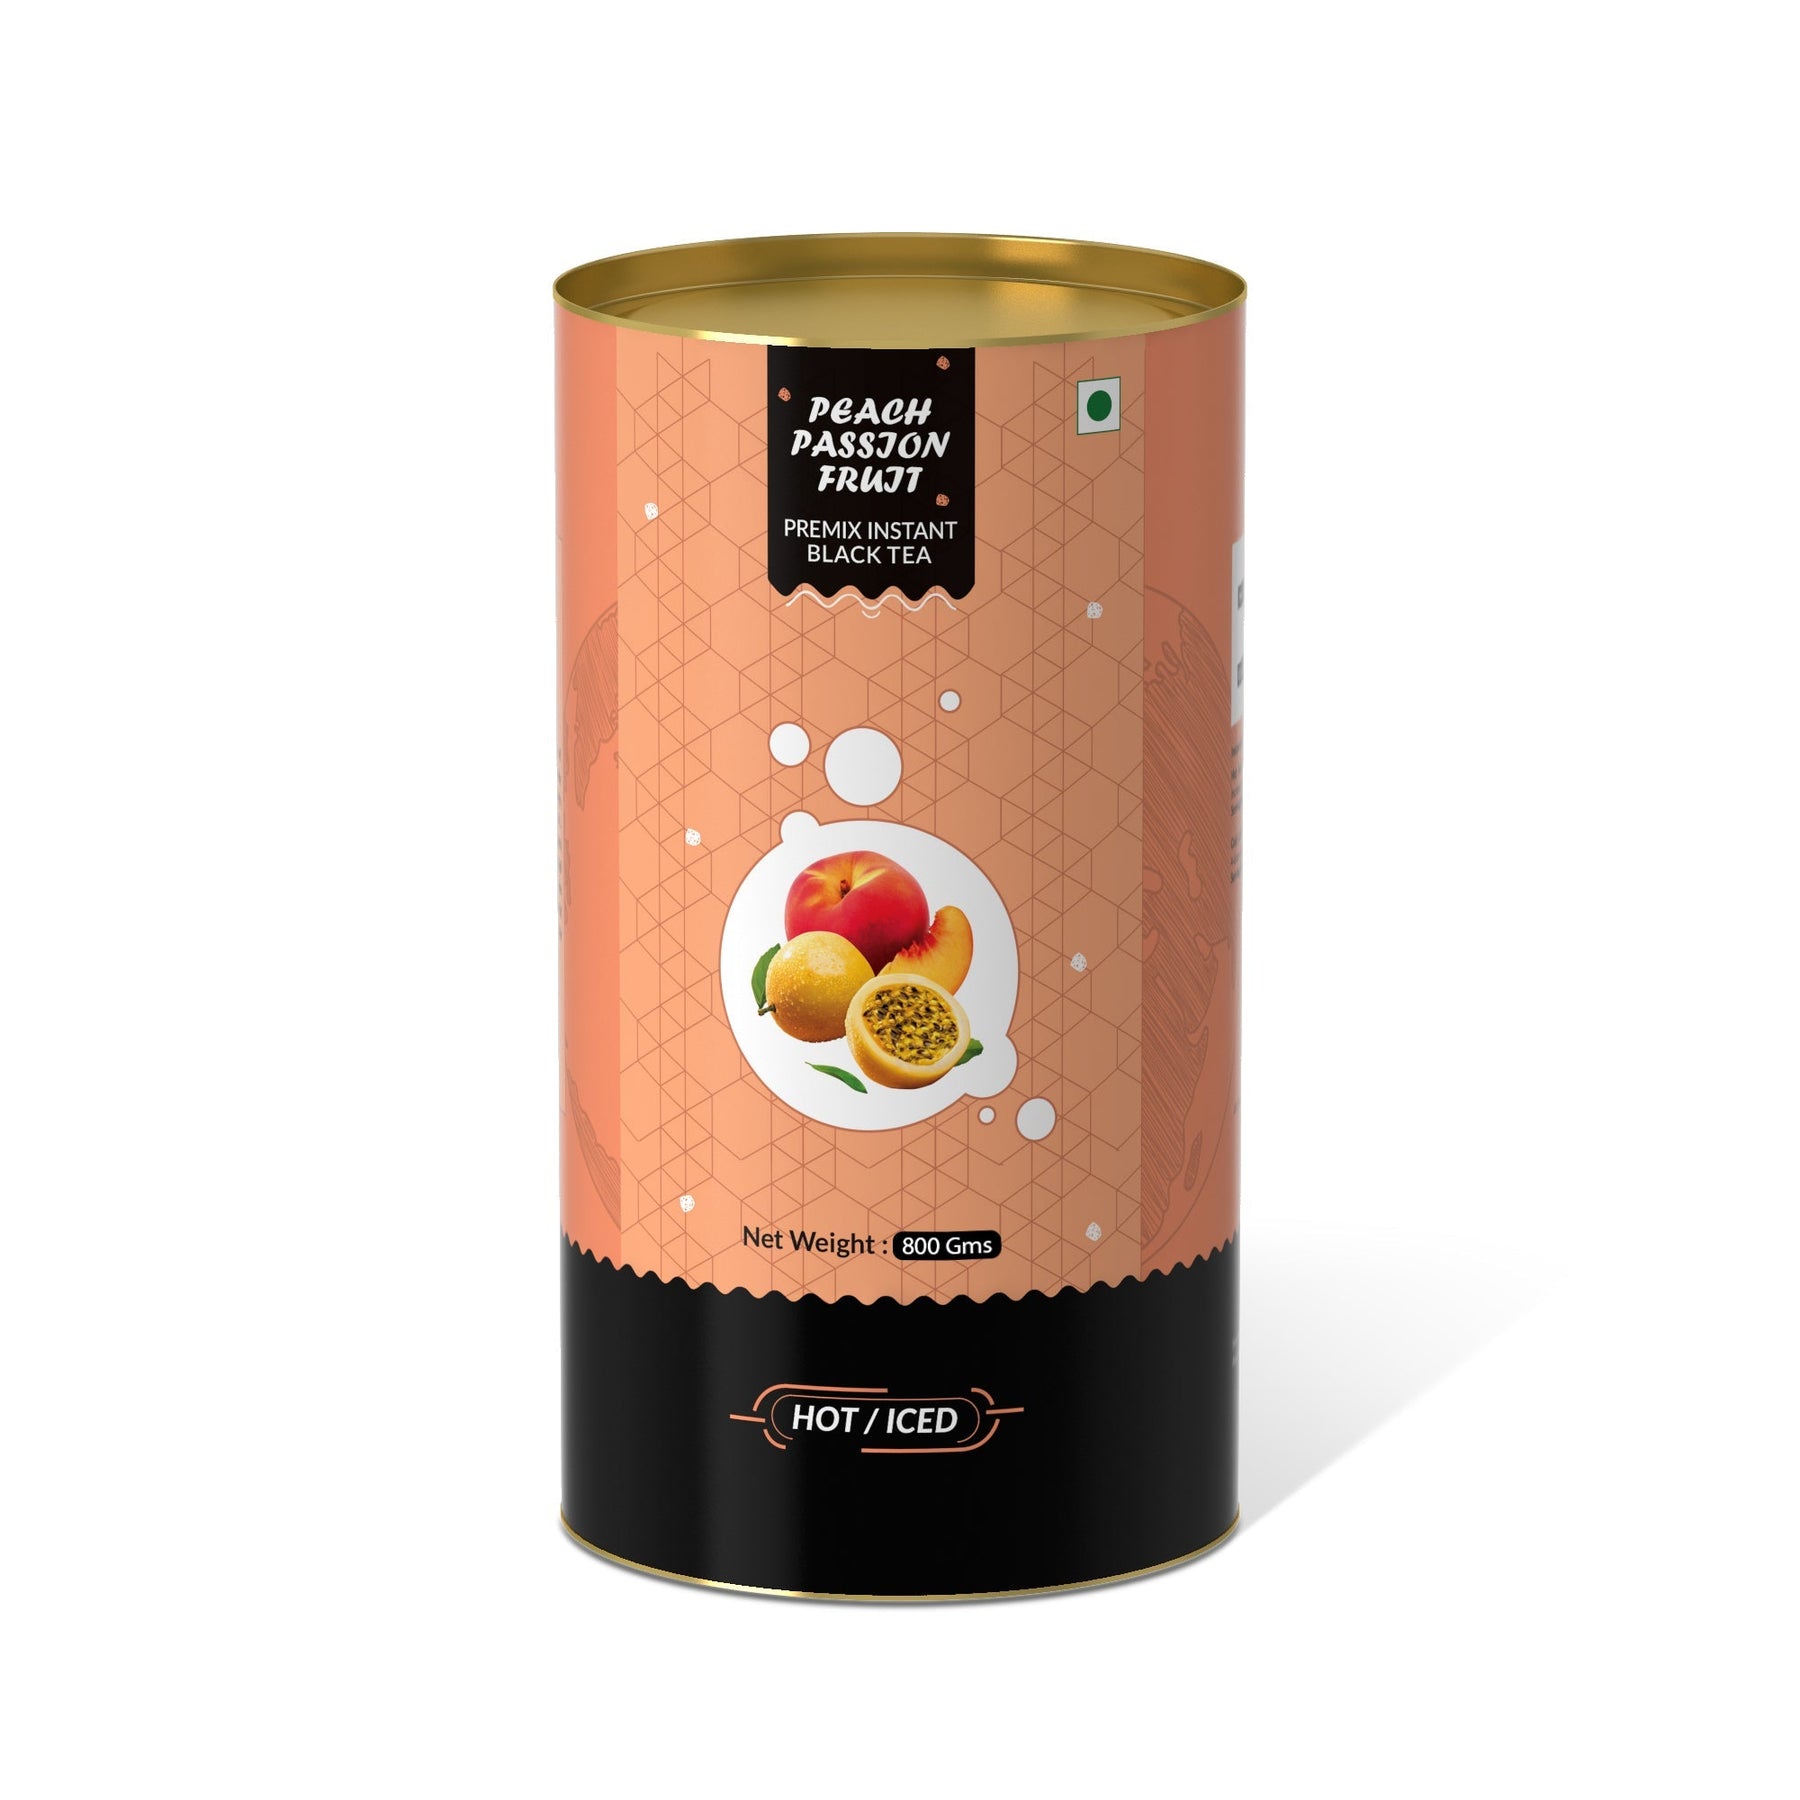 Peach & Passion Fruit Flavored Instant Black Tea - 800 gms